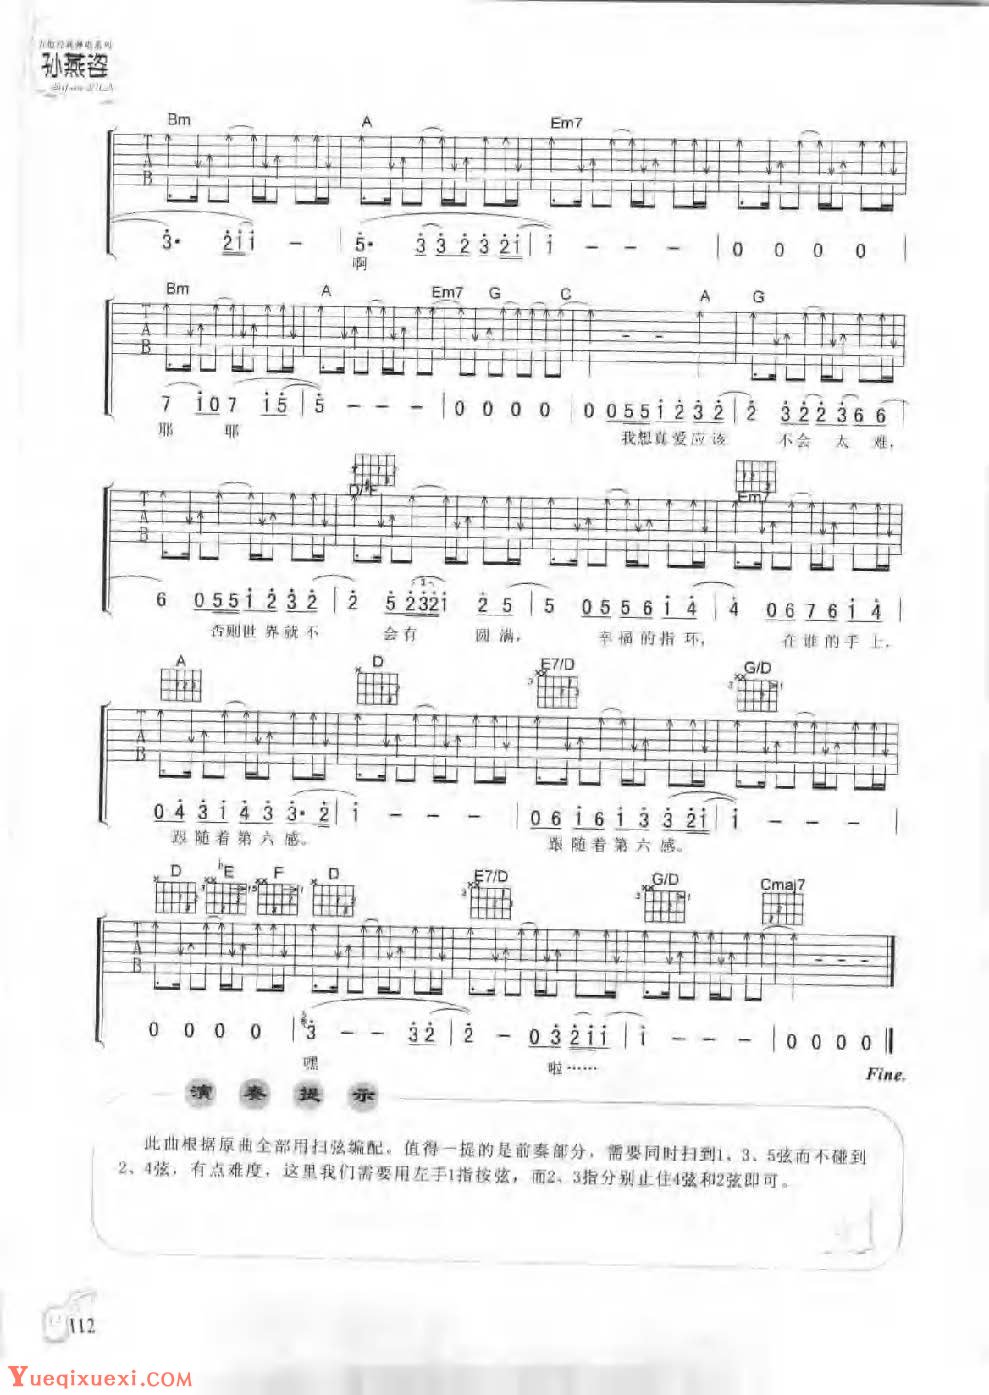 孙燕姿吉他经典弹唱《第六感》